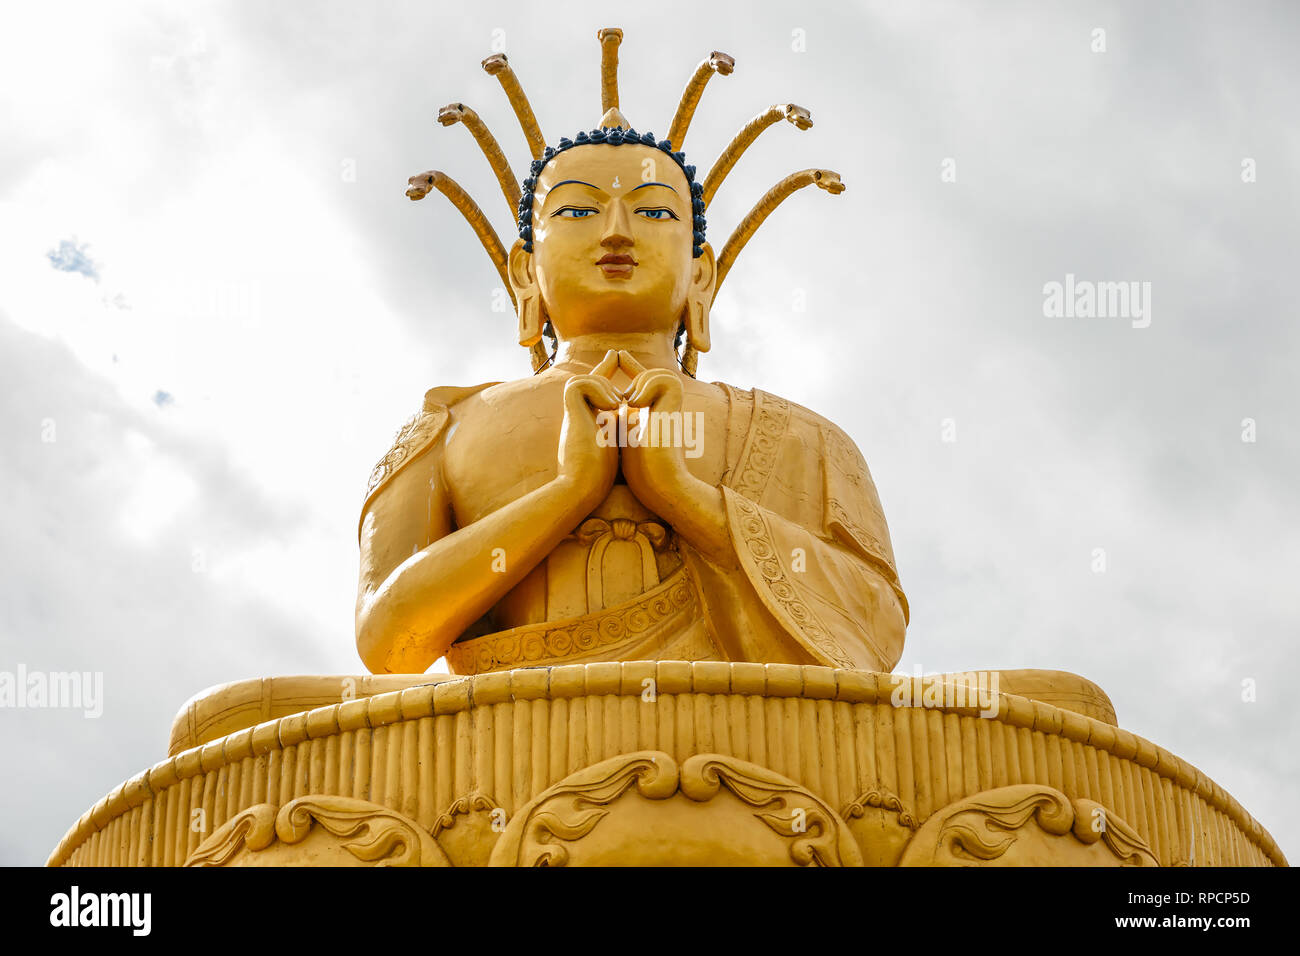 Statue Buddha - la stazione del mondo. Bomboniere, alimenti